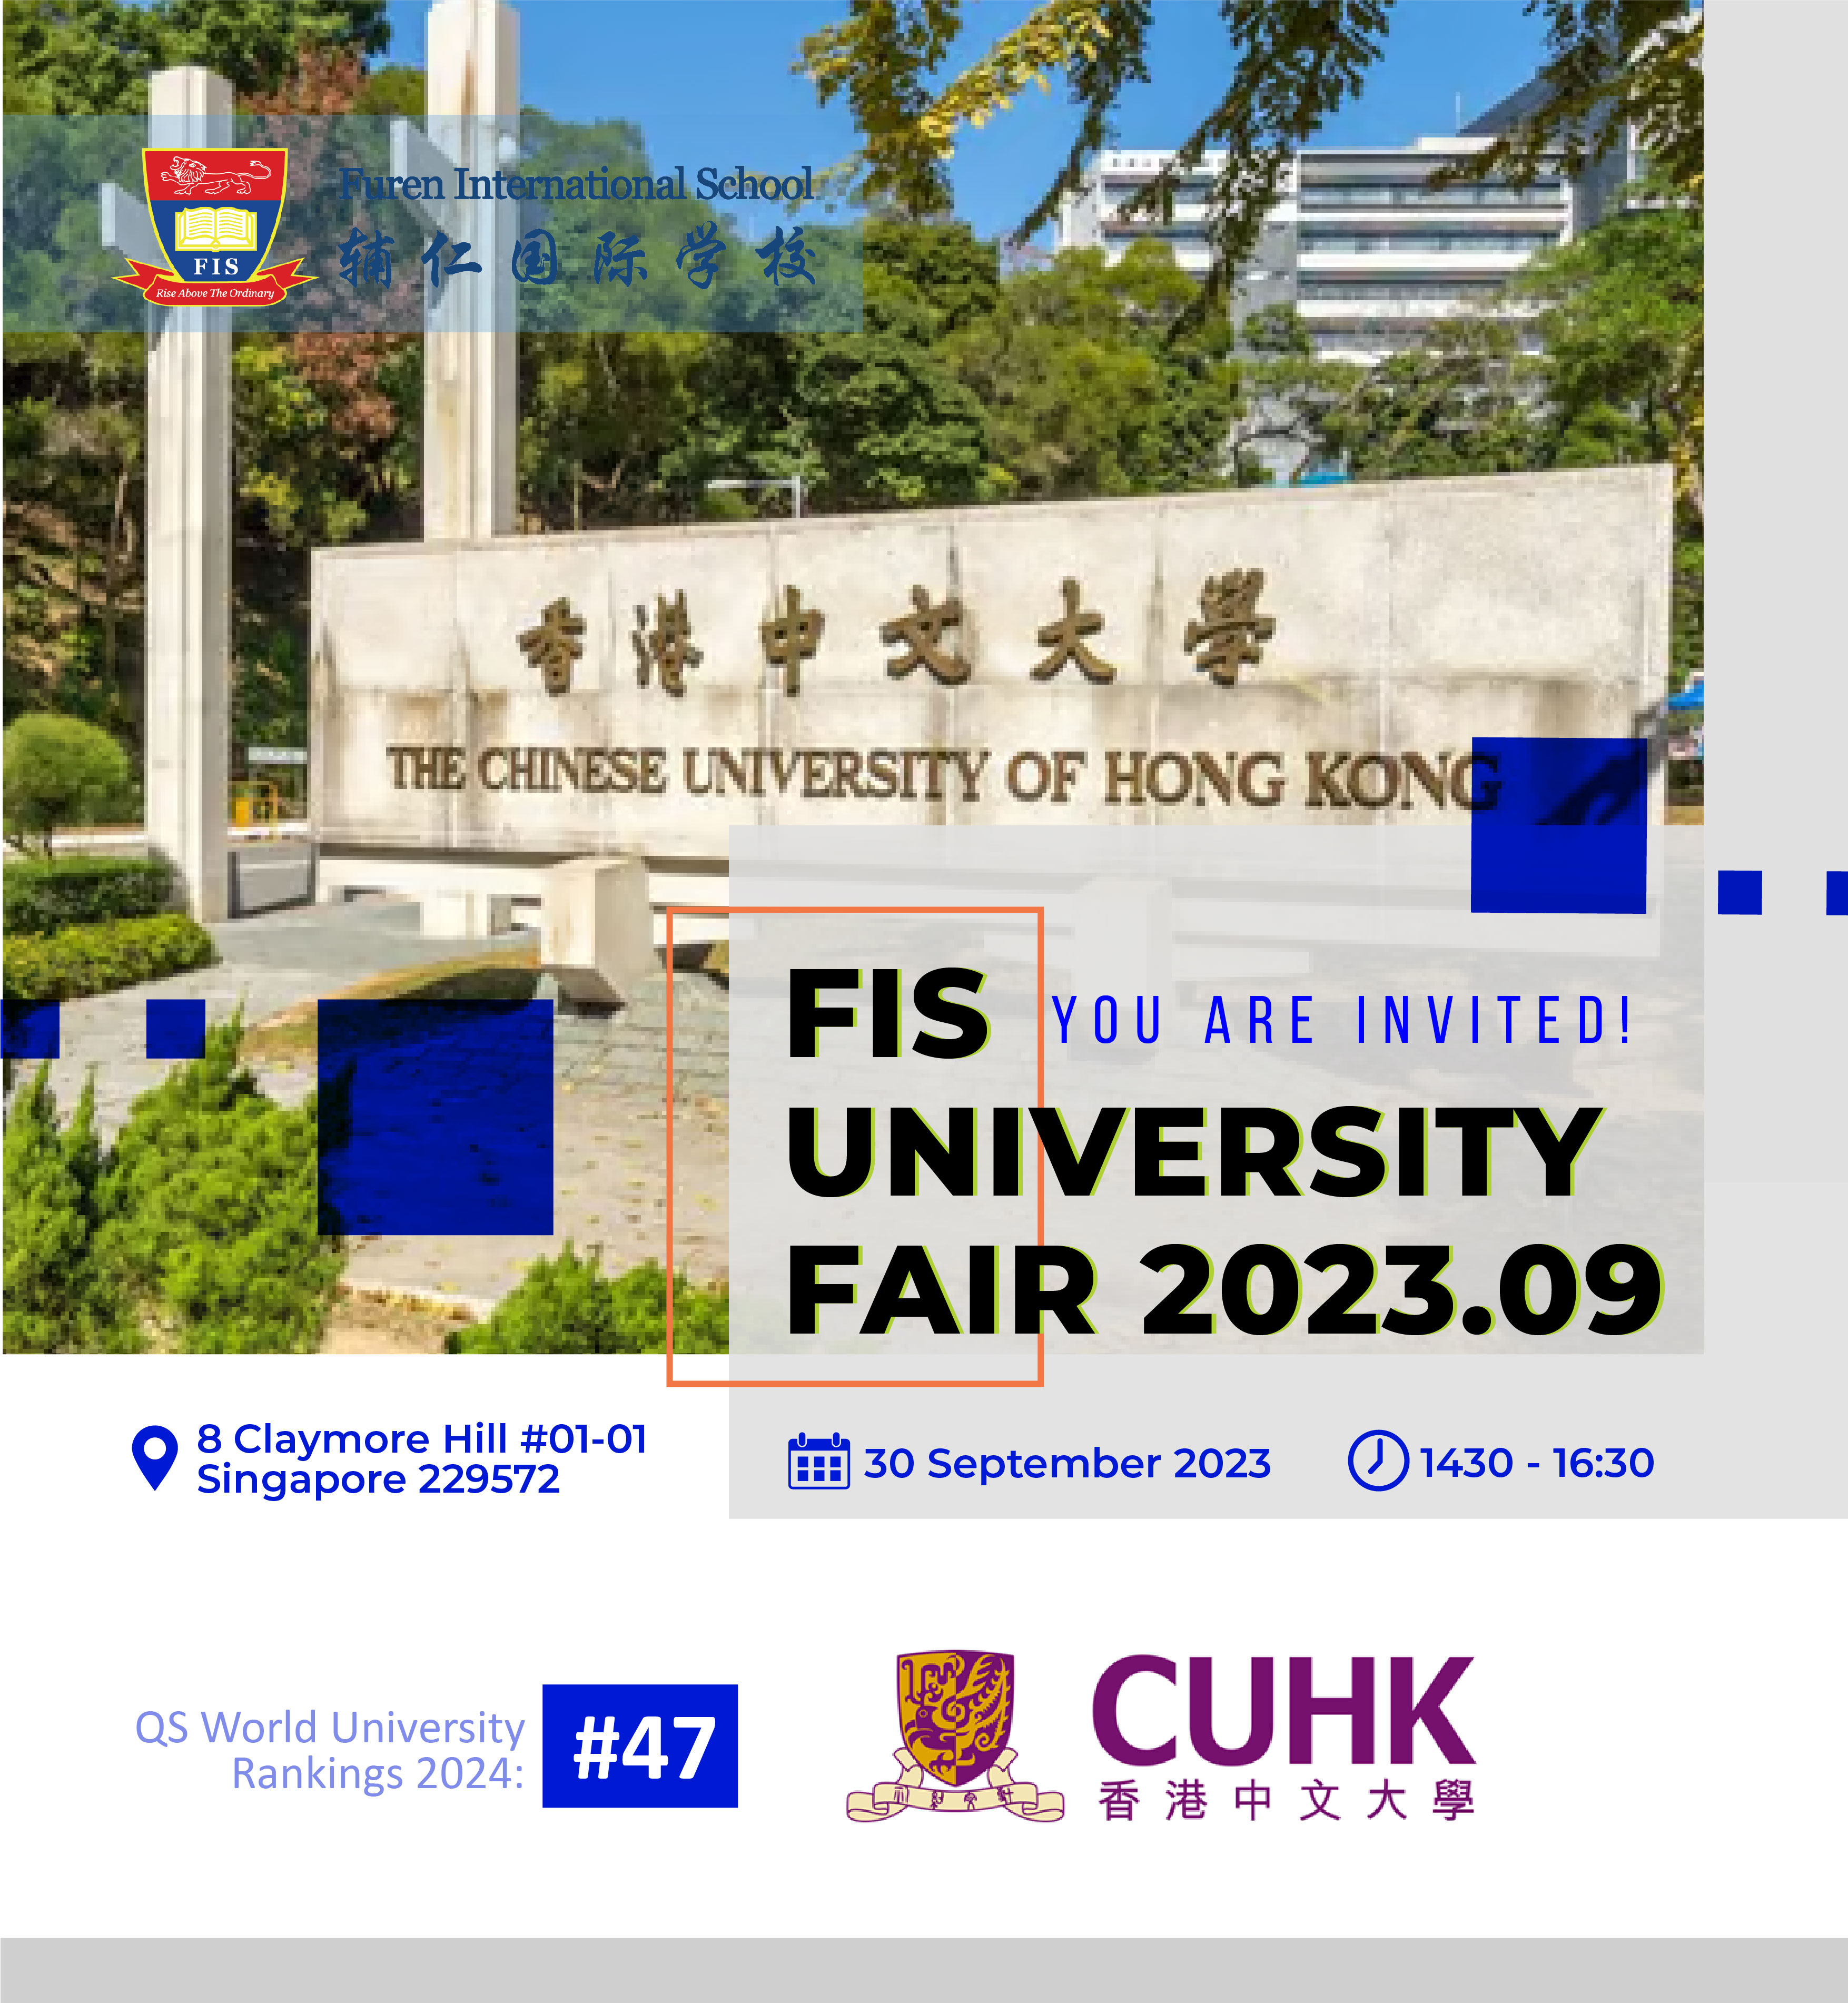 FIS University Fair – Chinese University of Hong Kong (CUHK)